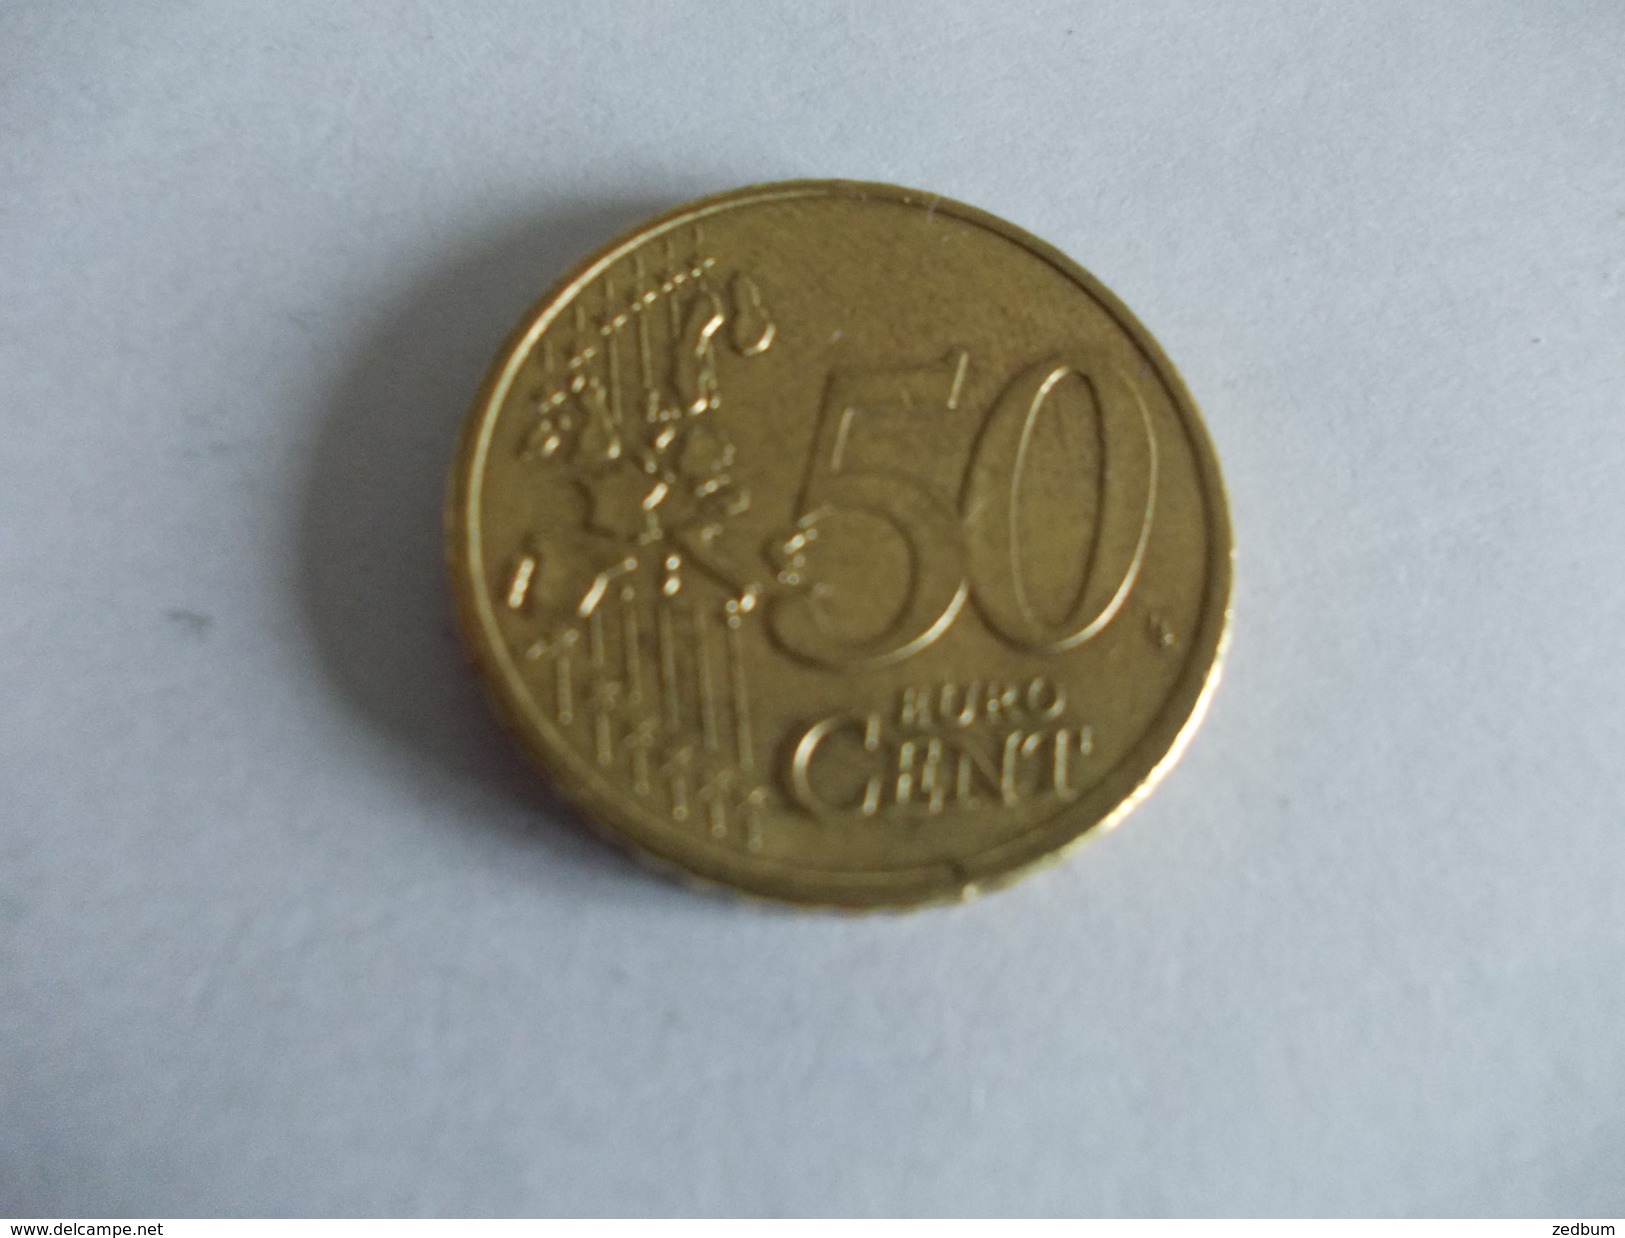 Monnaie Pièce De 50 Centimes D' Euro De Allemagne Année 2002 Valeur Argus 1 &euro; - Allemagne